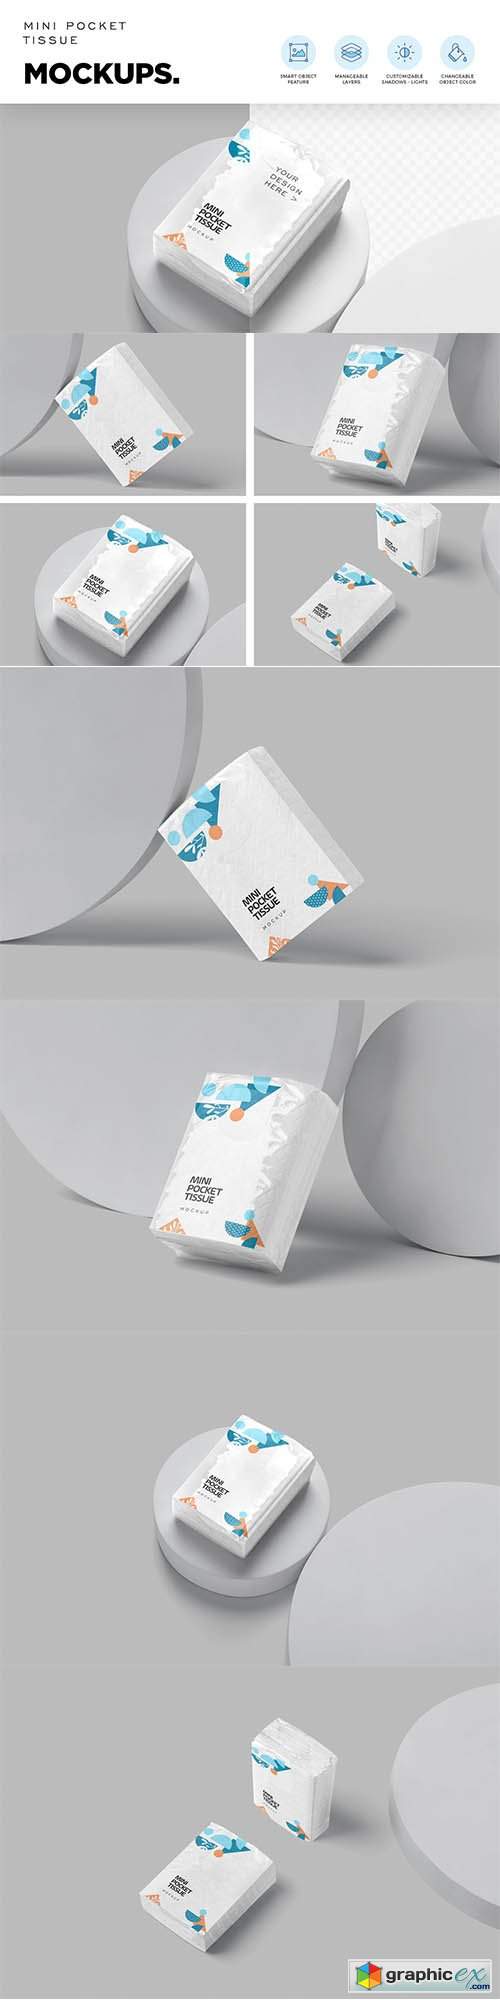 Pocket Tissue Pack Mockups 